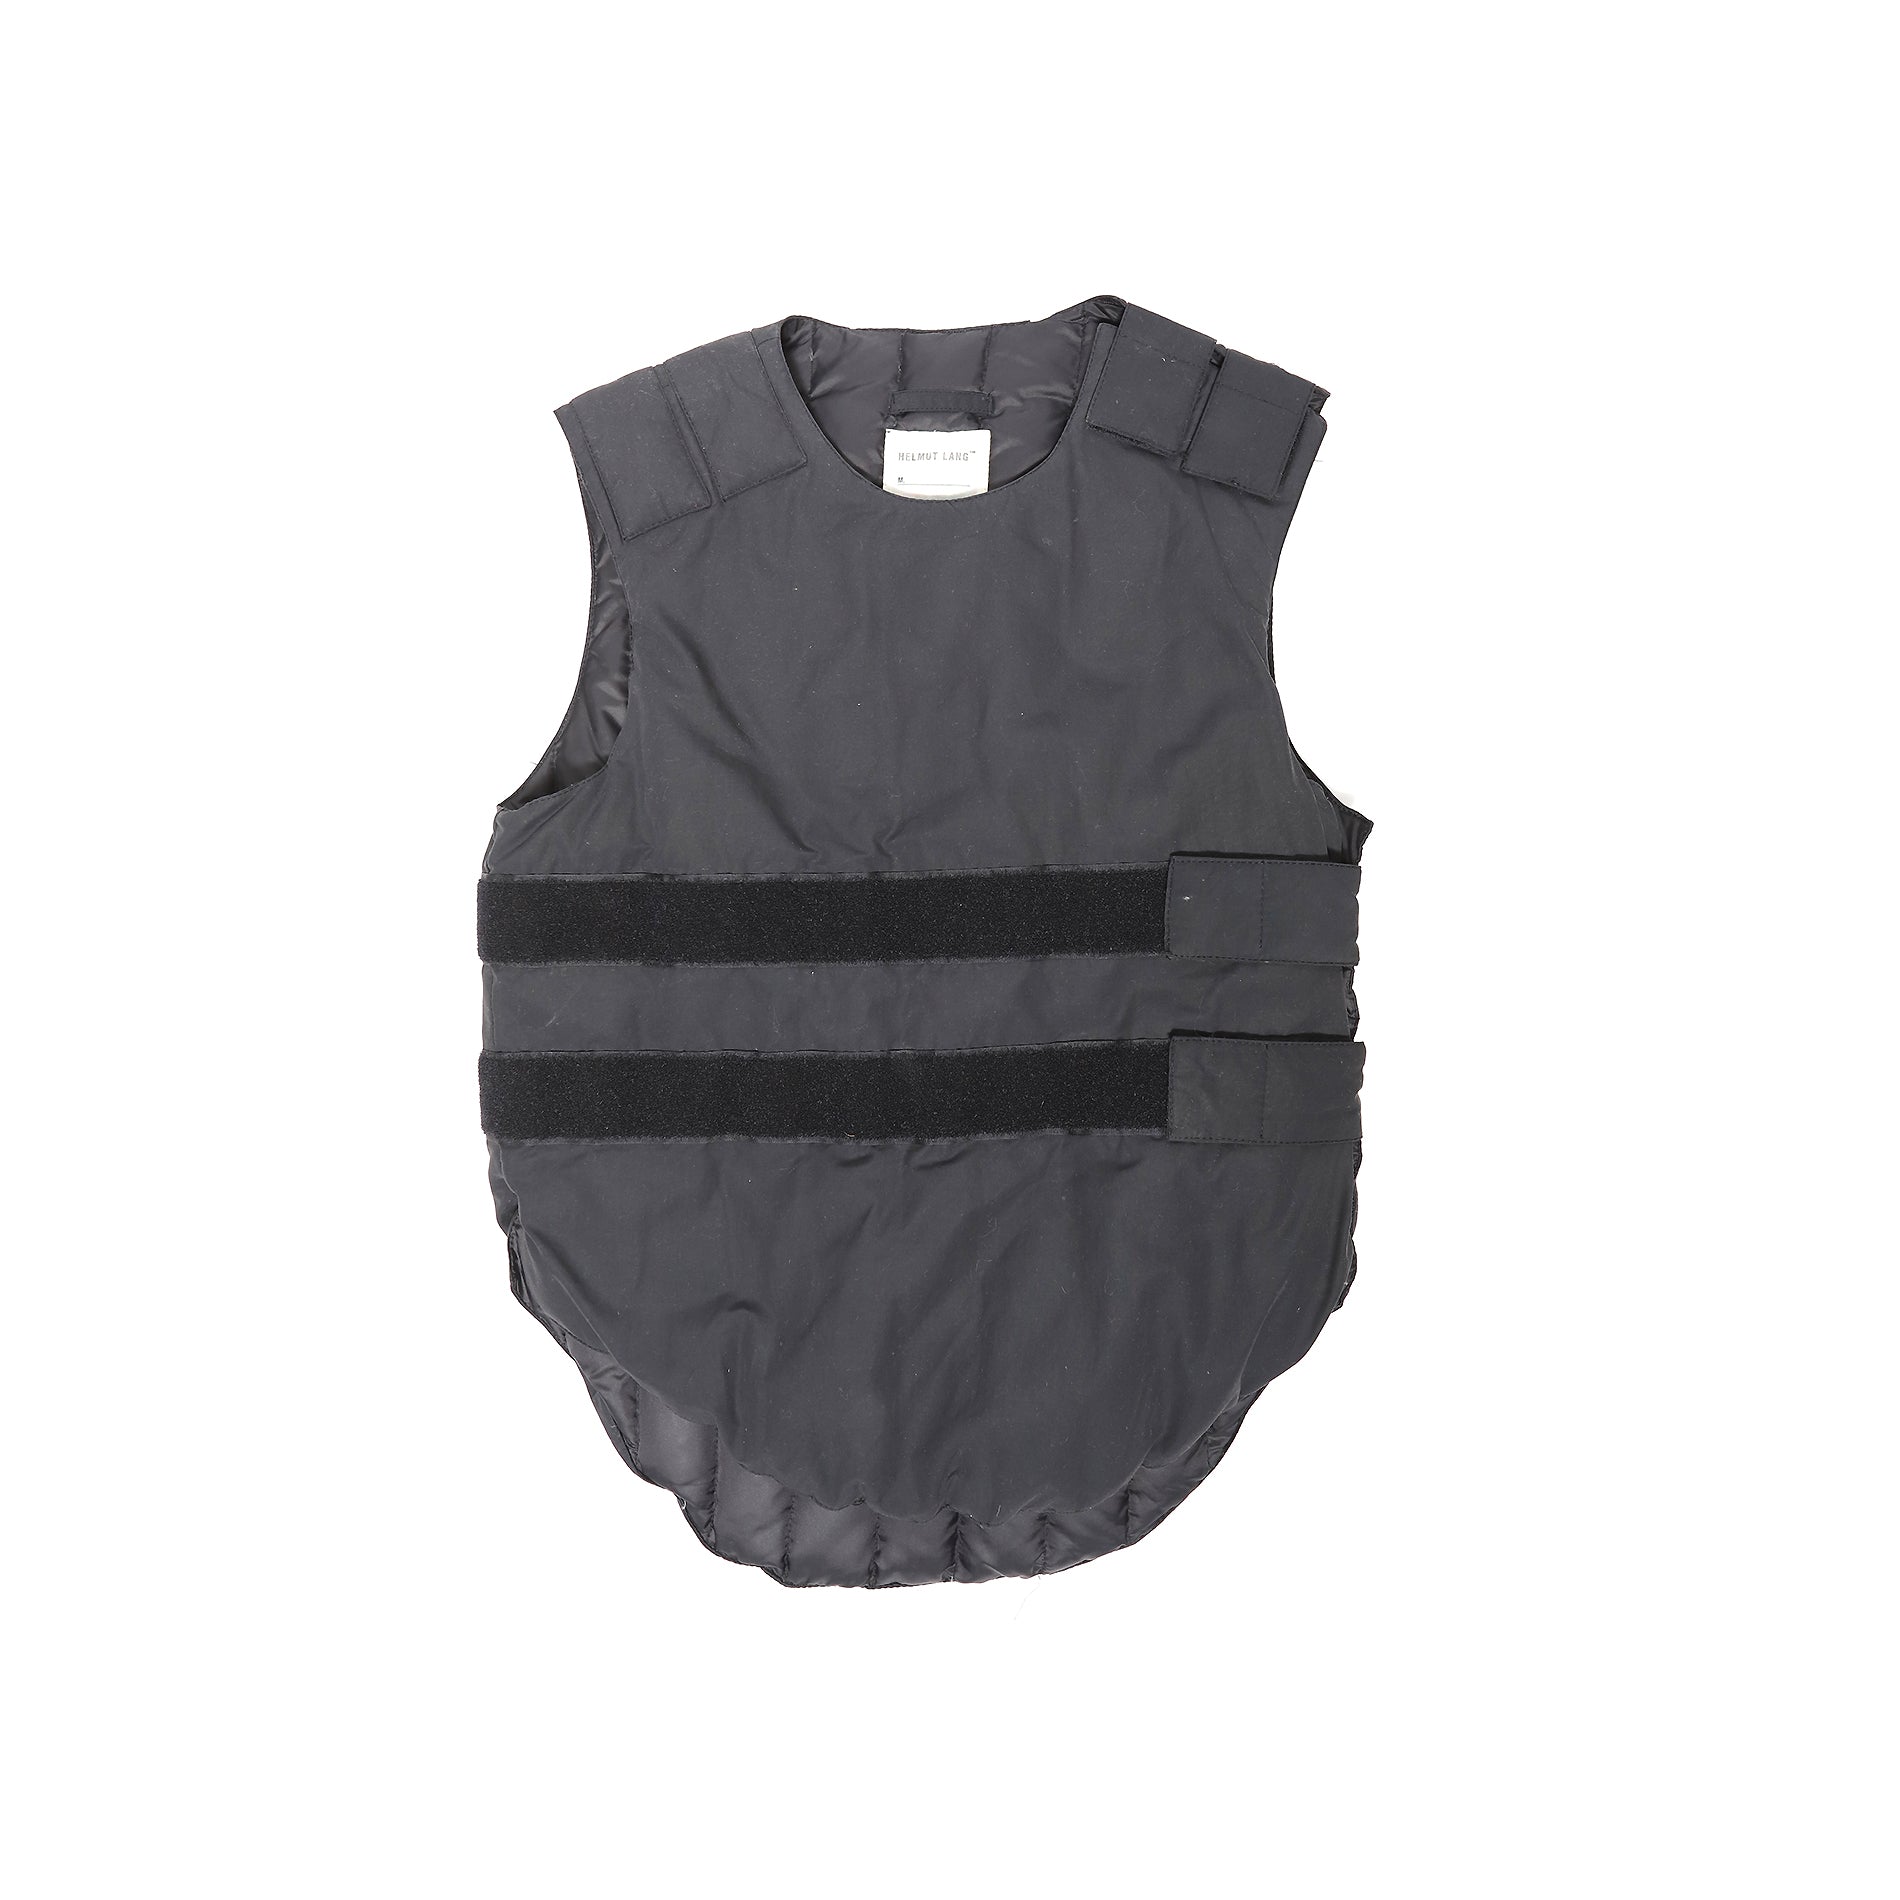 Helmut Lang AW98 Bullet Proof Vest